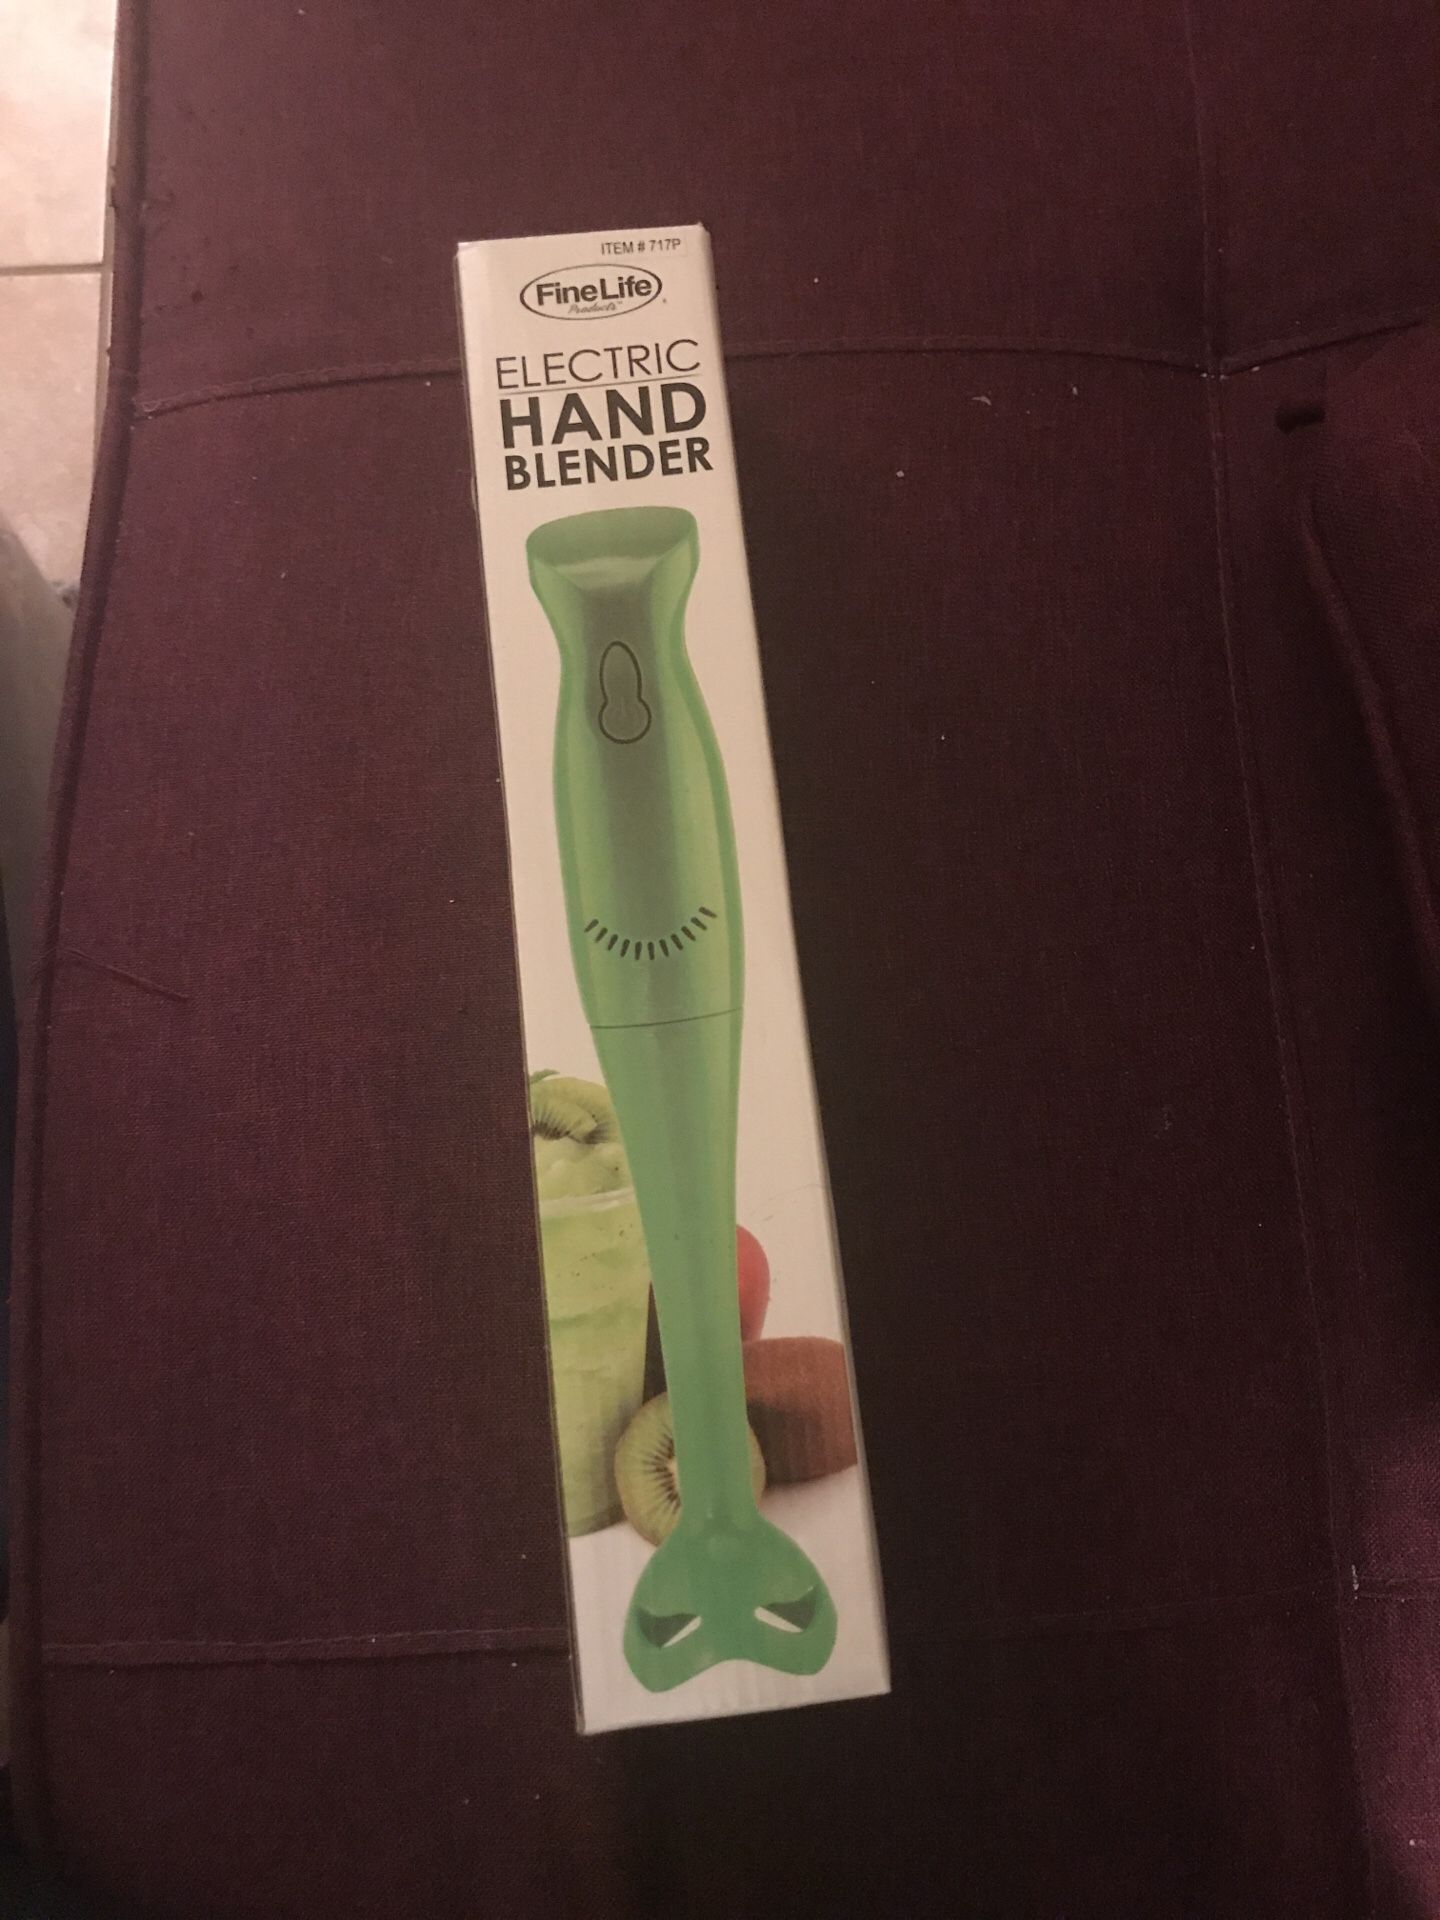 Hand Blender